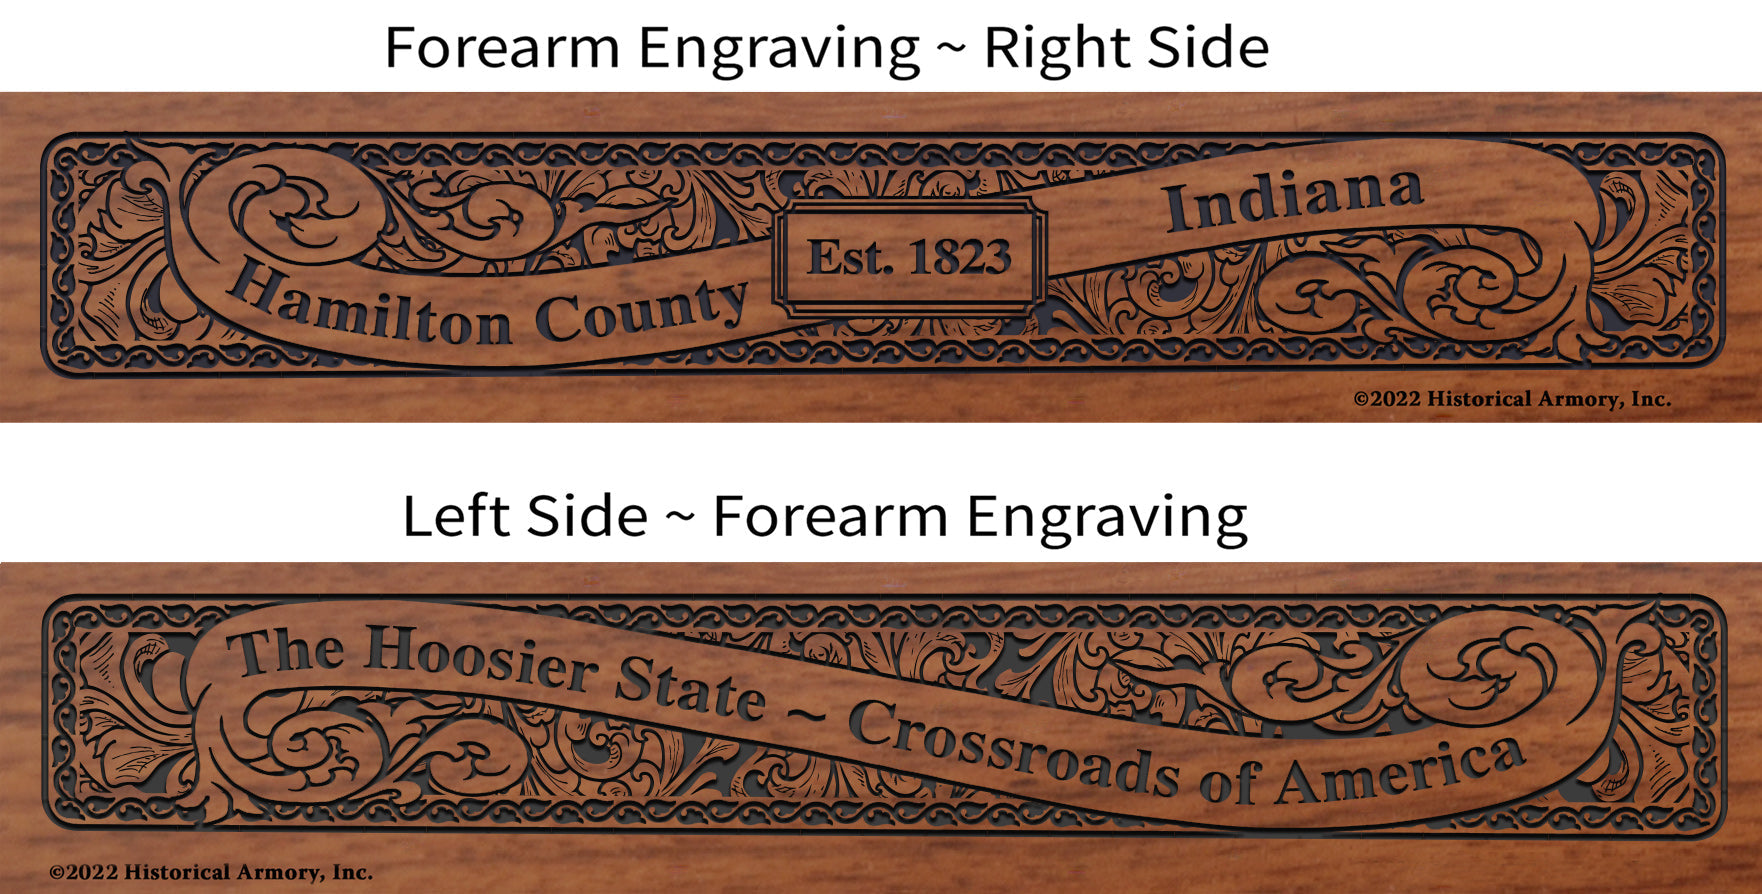 Hamilton County Indiana Engraved Rifle Forearm